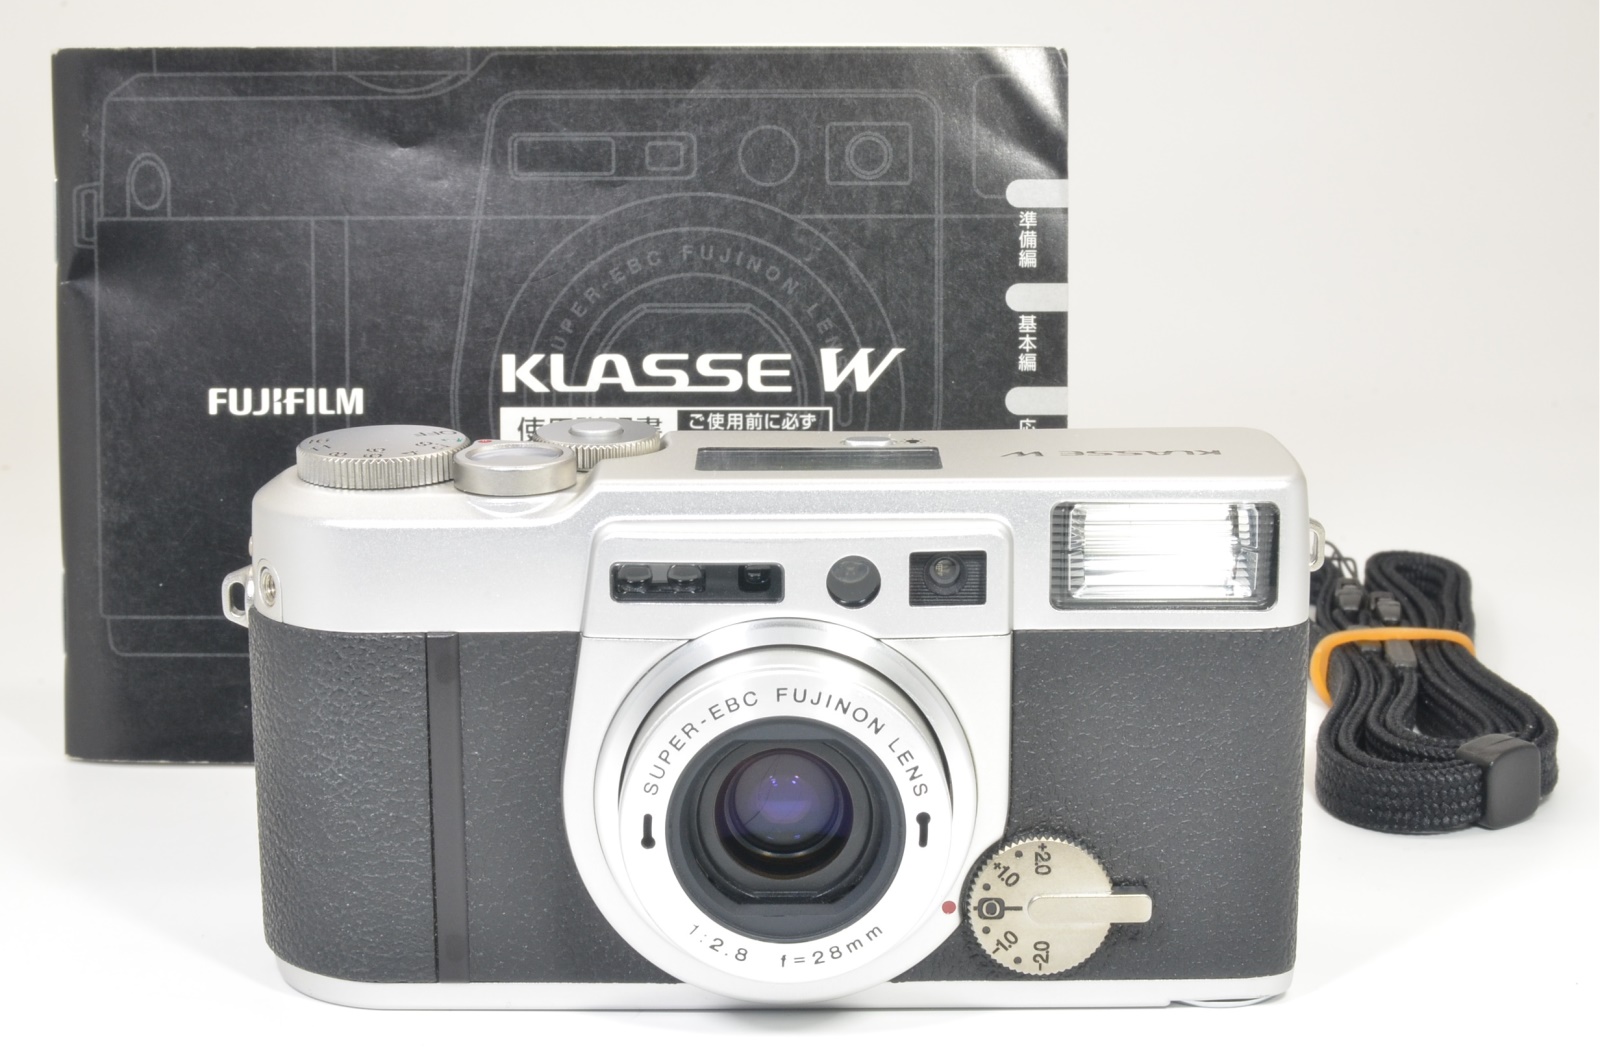 Fujifilm KLASSE W 28mm F2.8 #BB51